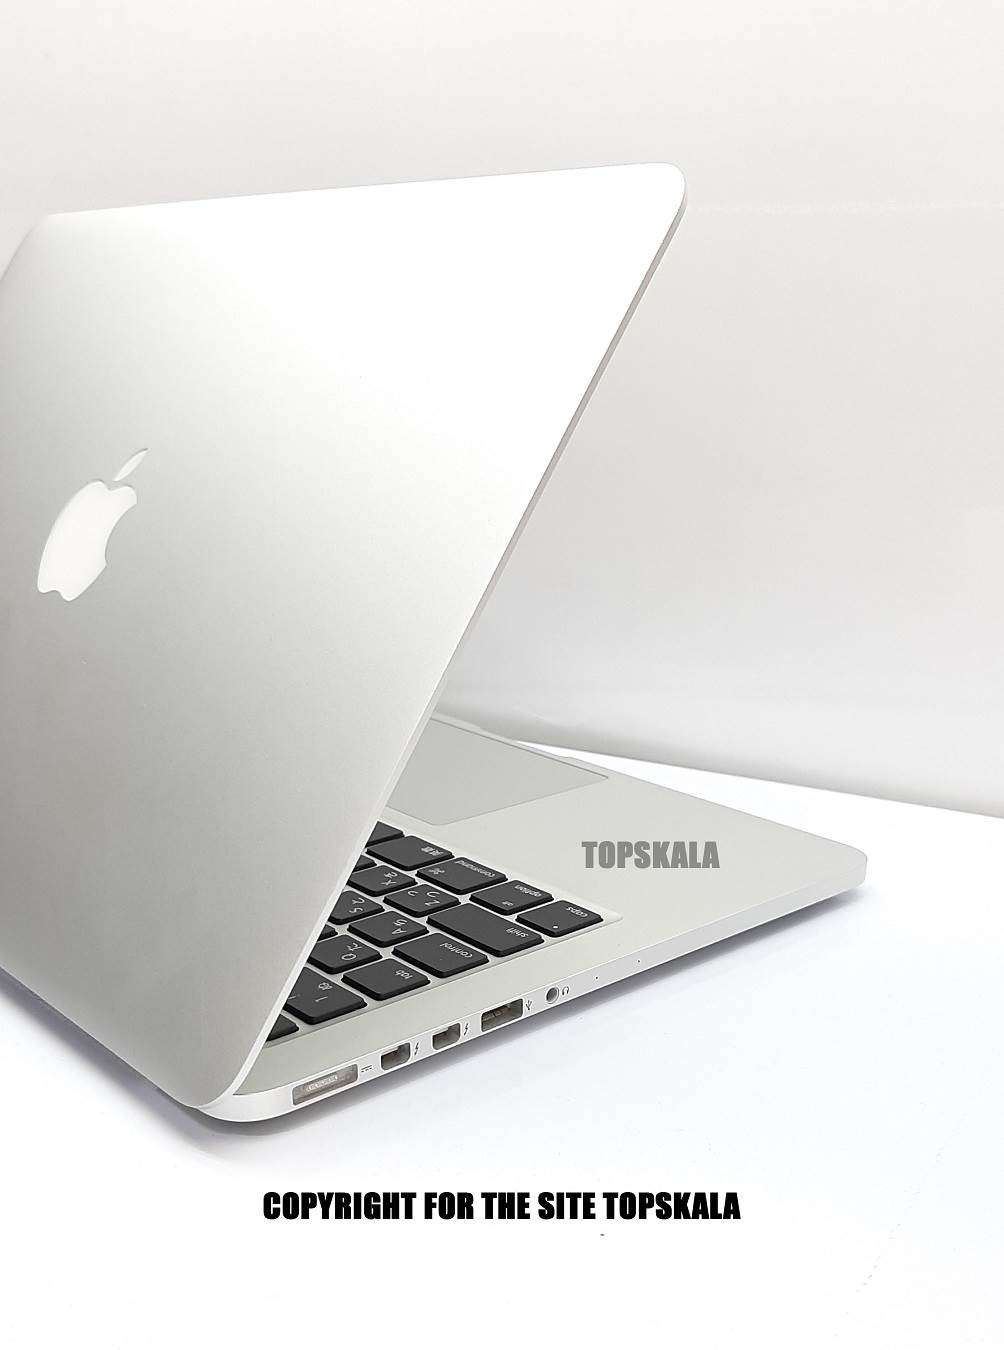 لپ تاپ استوک اپل مدل MacBook Pro Late 2015 - 13 inch با مشخصات i5-2.7GHz-8GB-256GB-SSD-2GB-intel-iris-6100